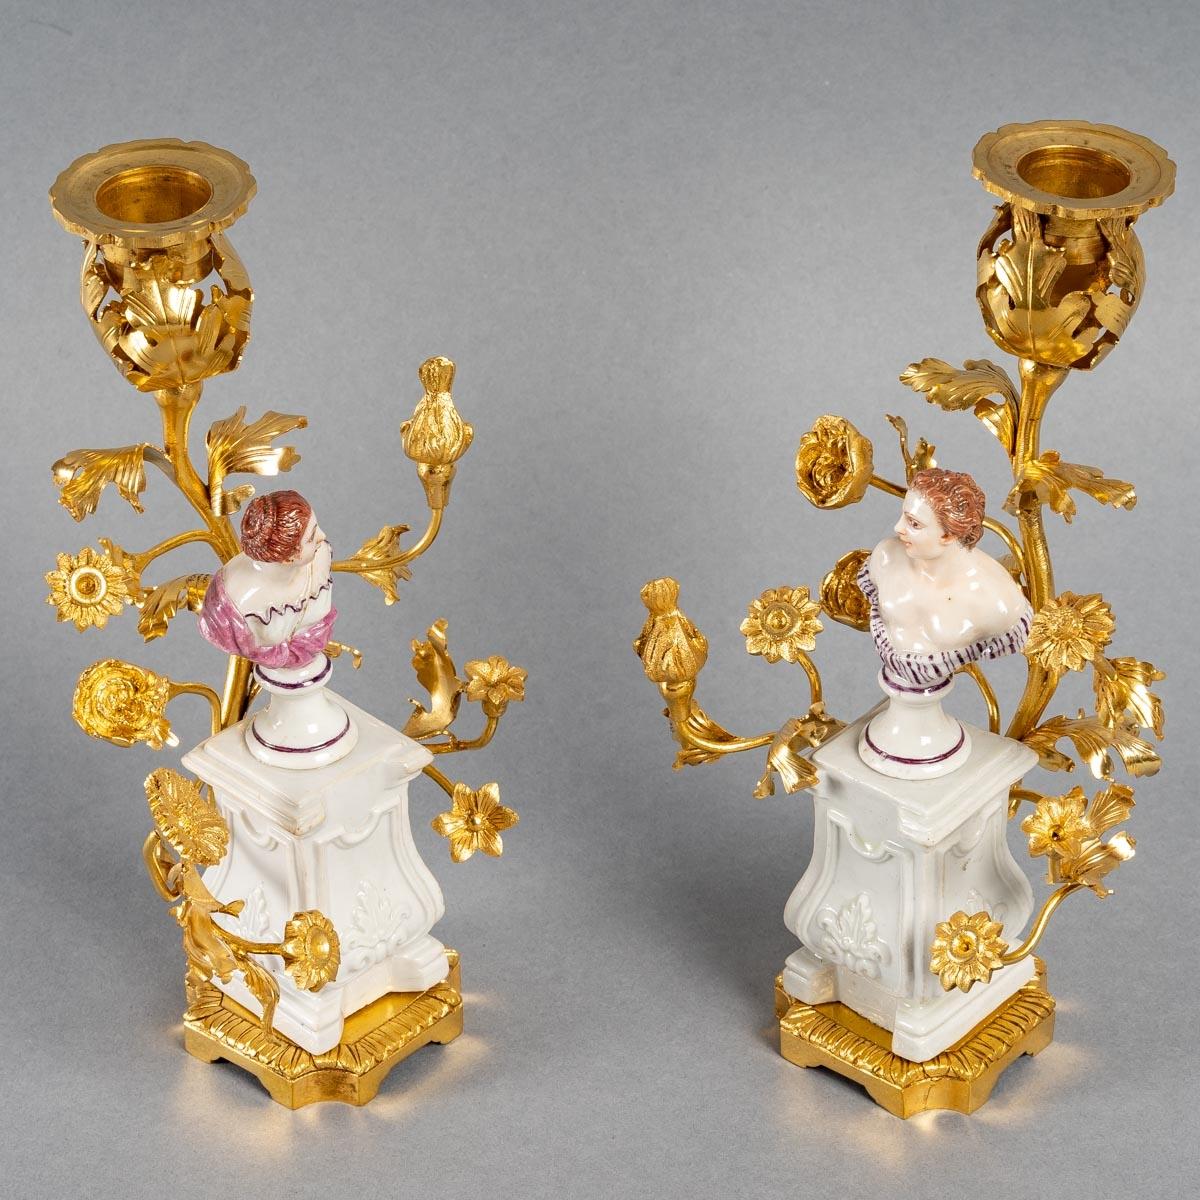 Paire de bougeoirs en bronze, Louis XV

Belle paire de chandeliers italiens en bronze doré et porcelaine du XVIIIe siècle,

La charpente date du XIXe siècle

Dimensions : H : 20cm, L : 11cm, P : 5cm : H : 20cm, L : 11cm, P : 5cm